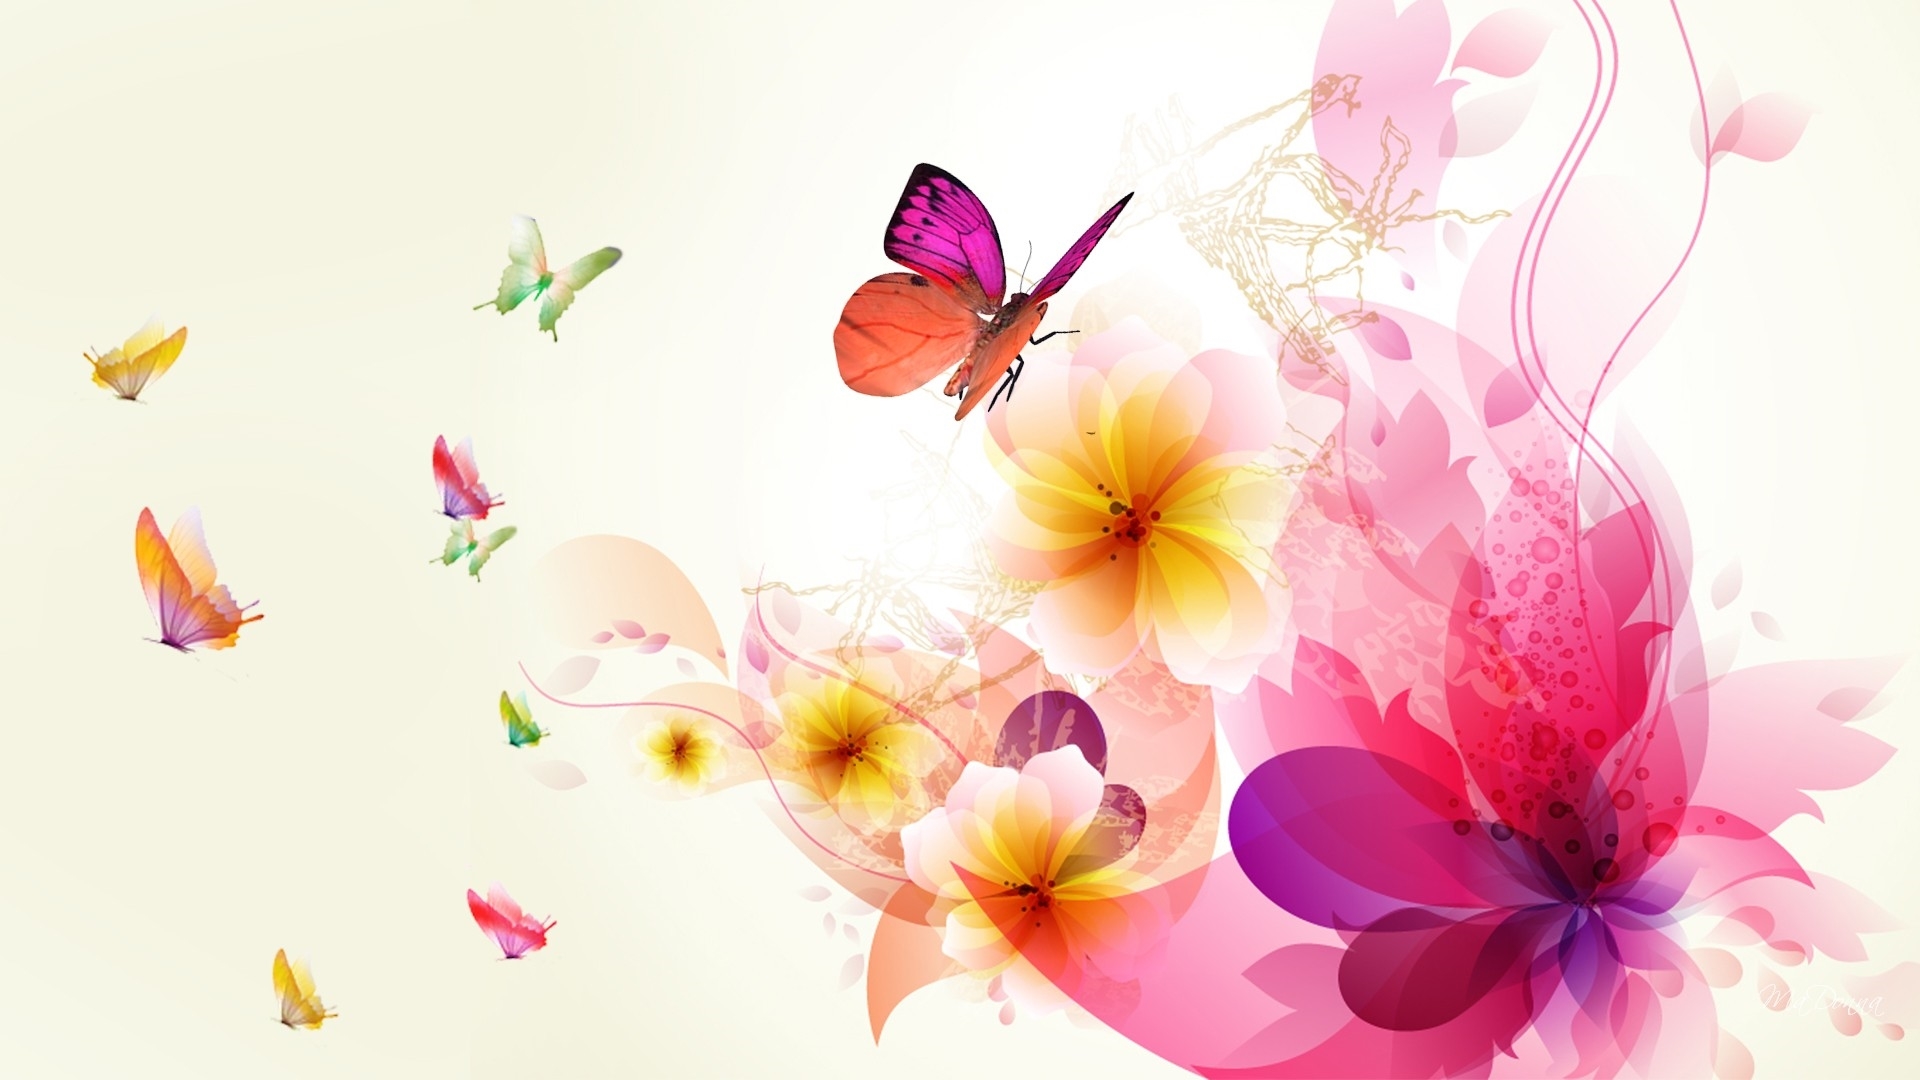 sfondi di fiori più recenti,la farfalla,petalo,fiore,pianta,falene e farfalle